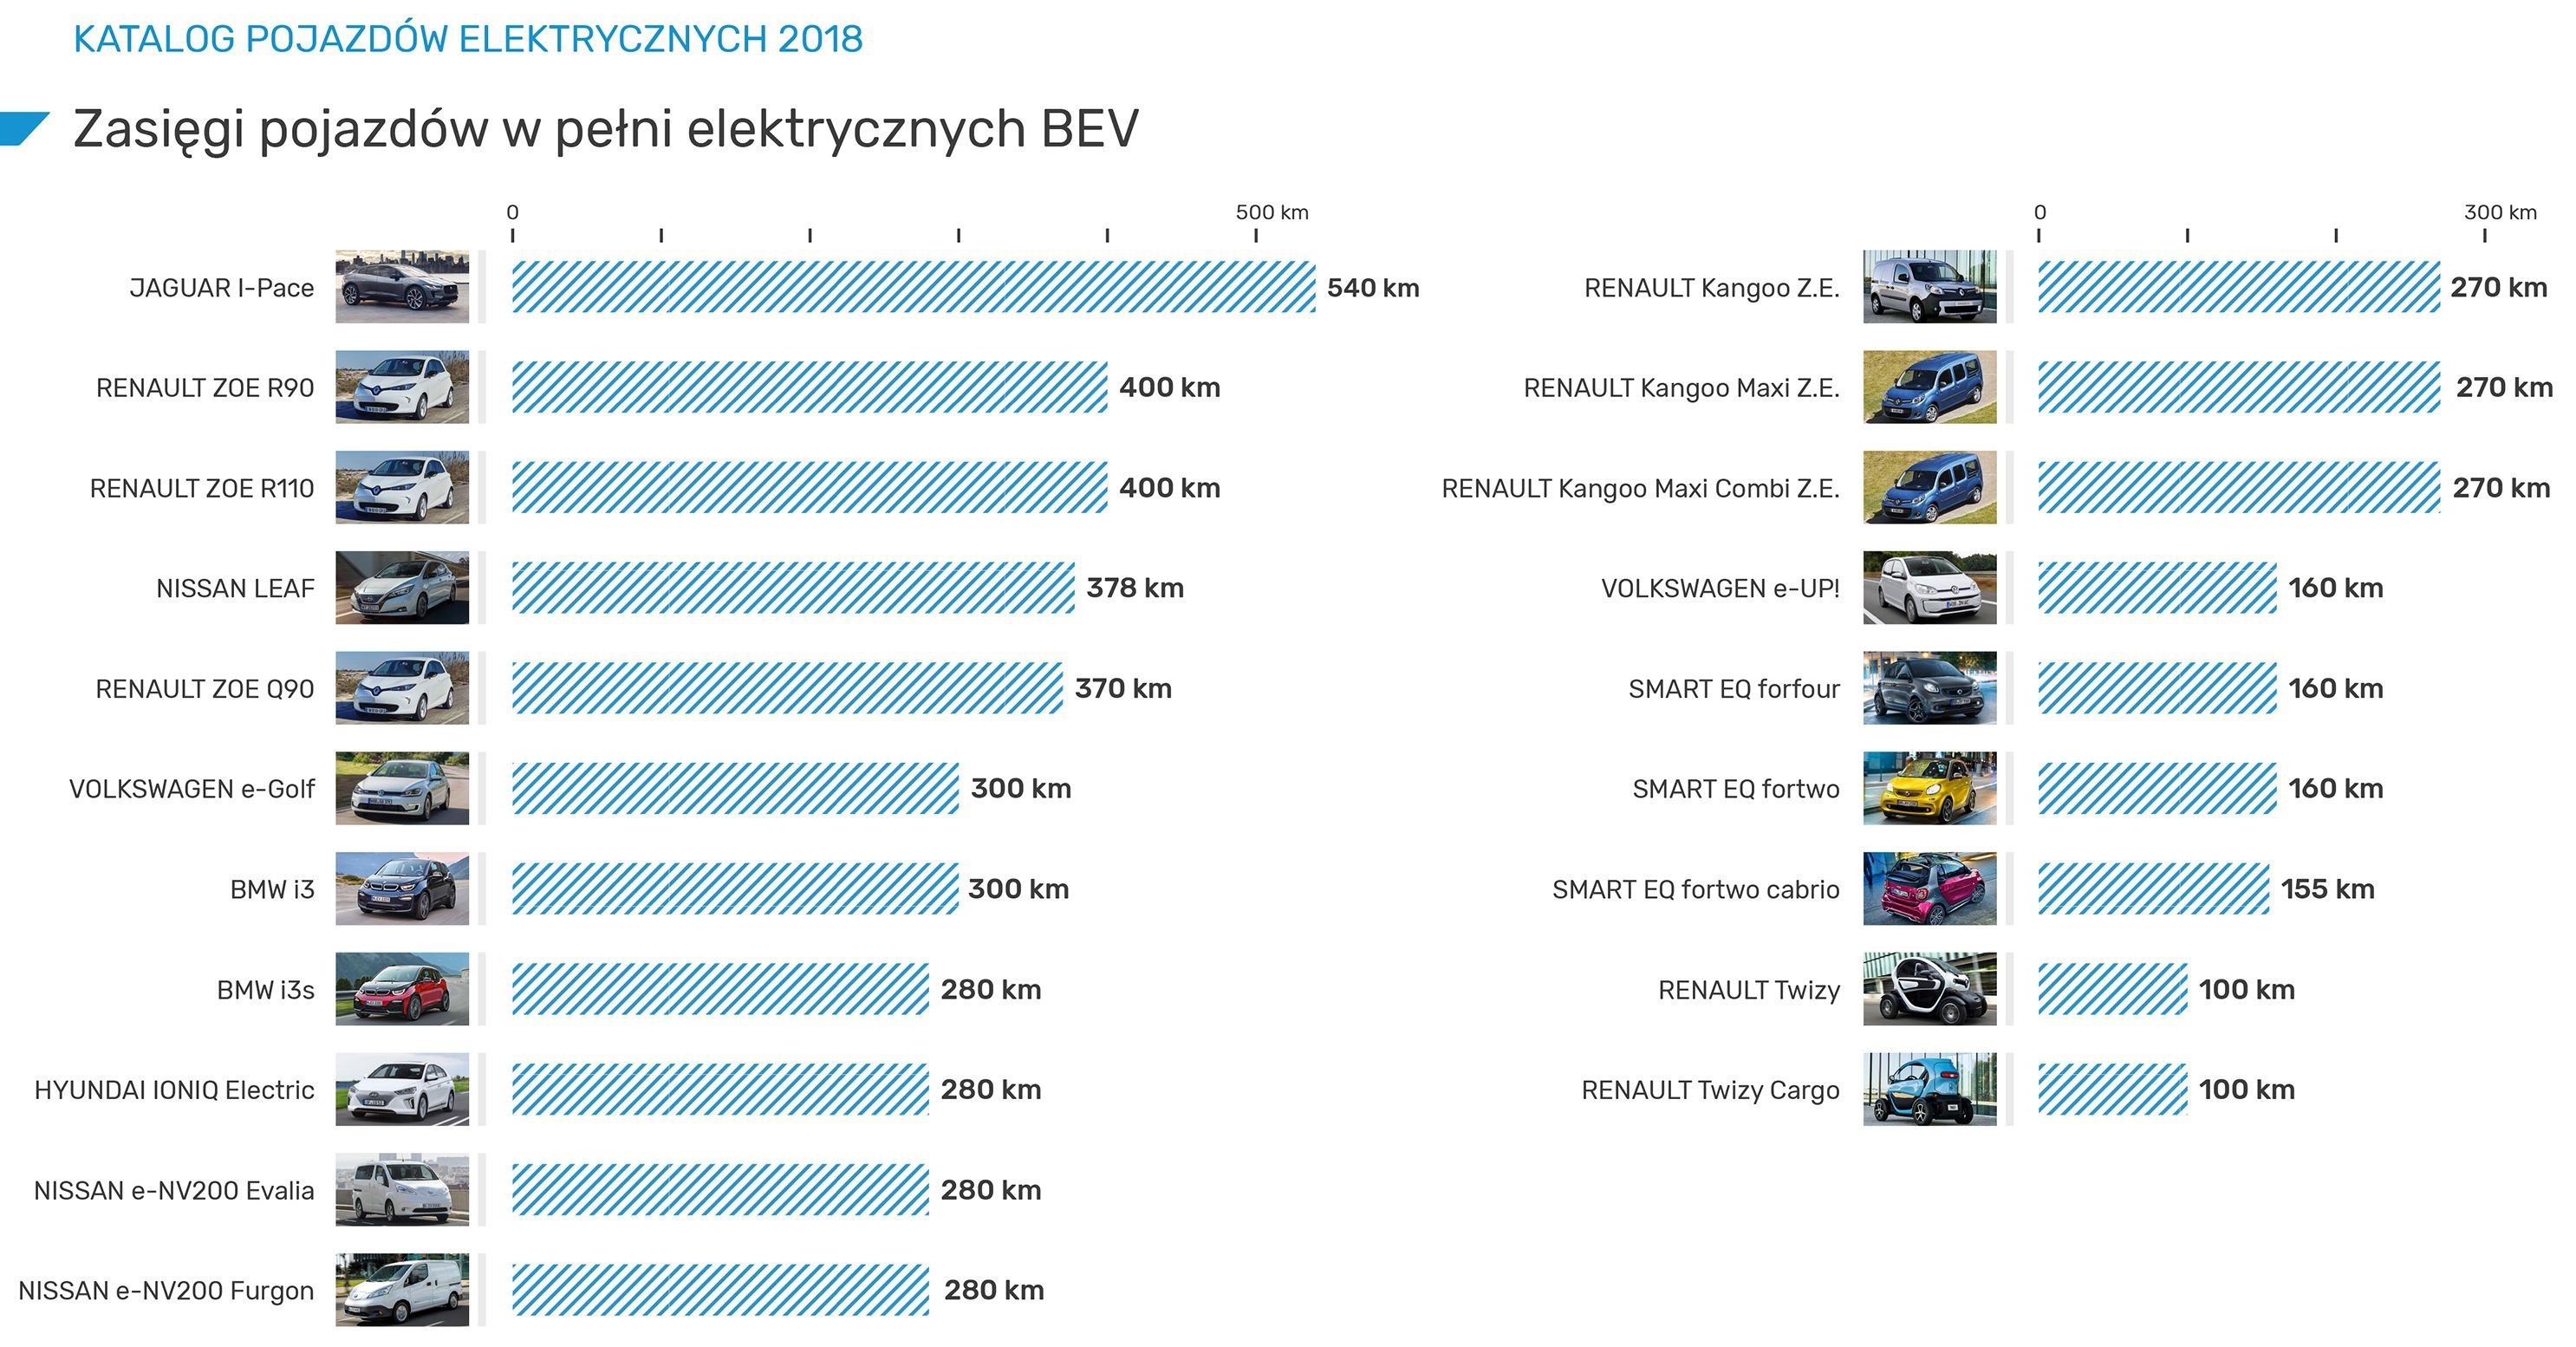 Renault Twizy (100 км, 6,1 кВтч) может похвастаться наименьшей дальностью полета